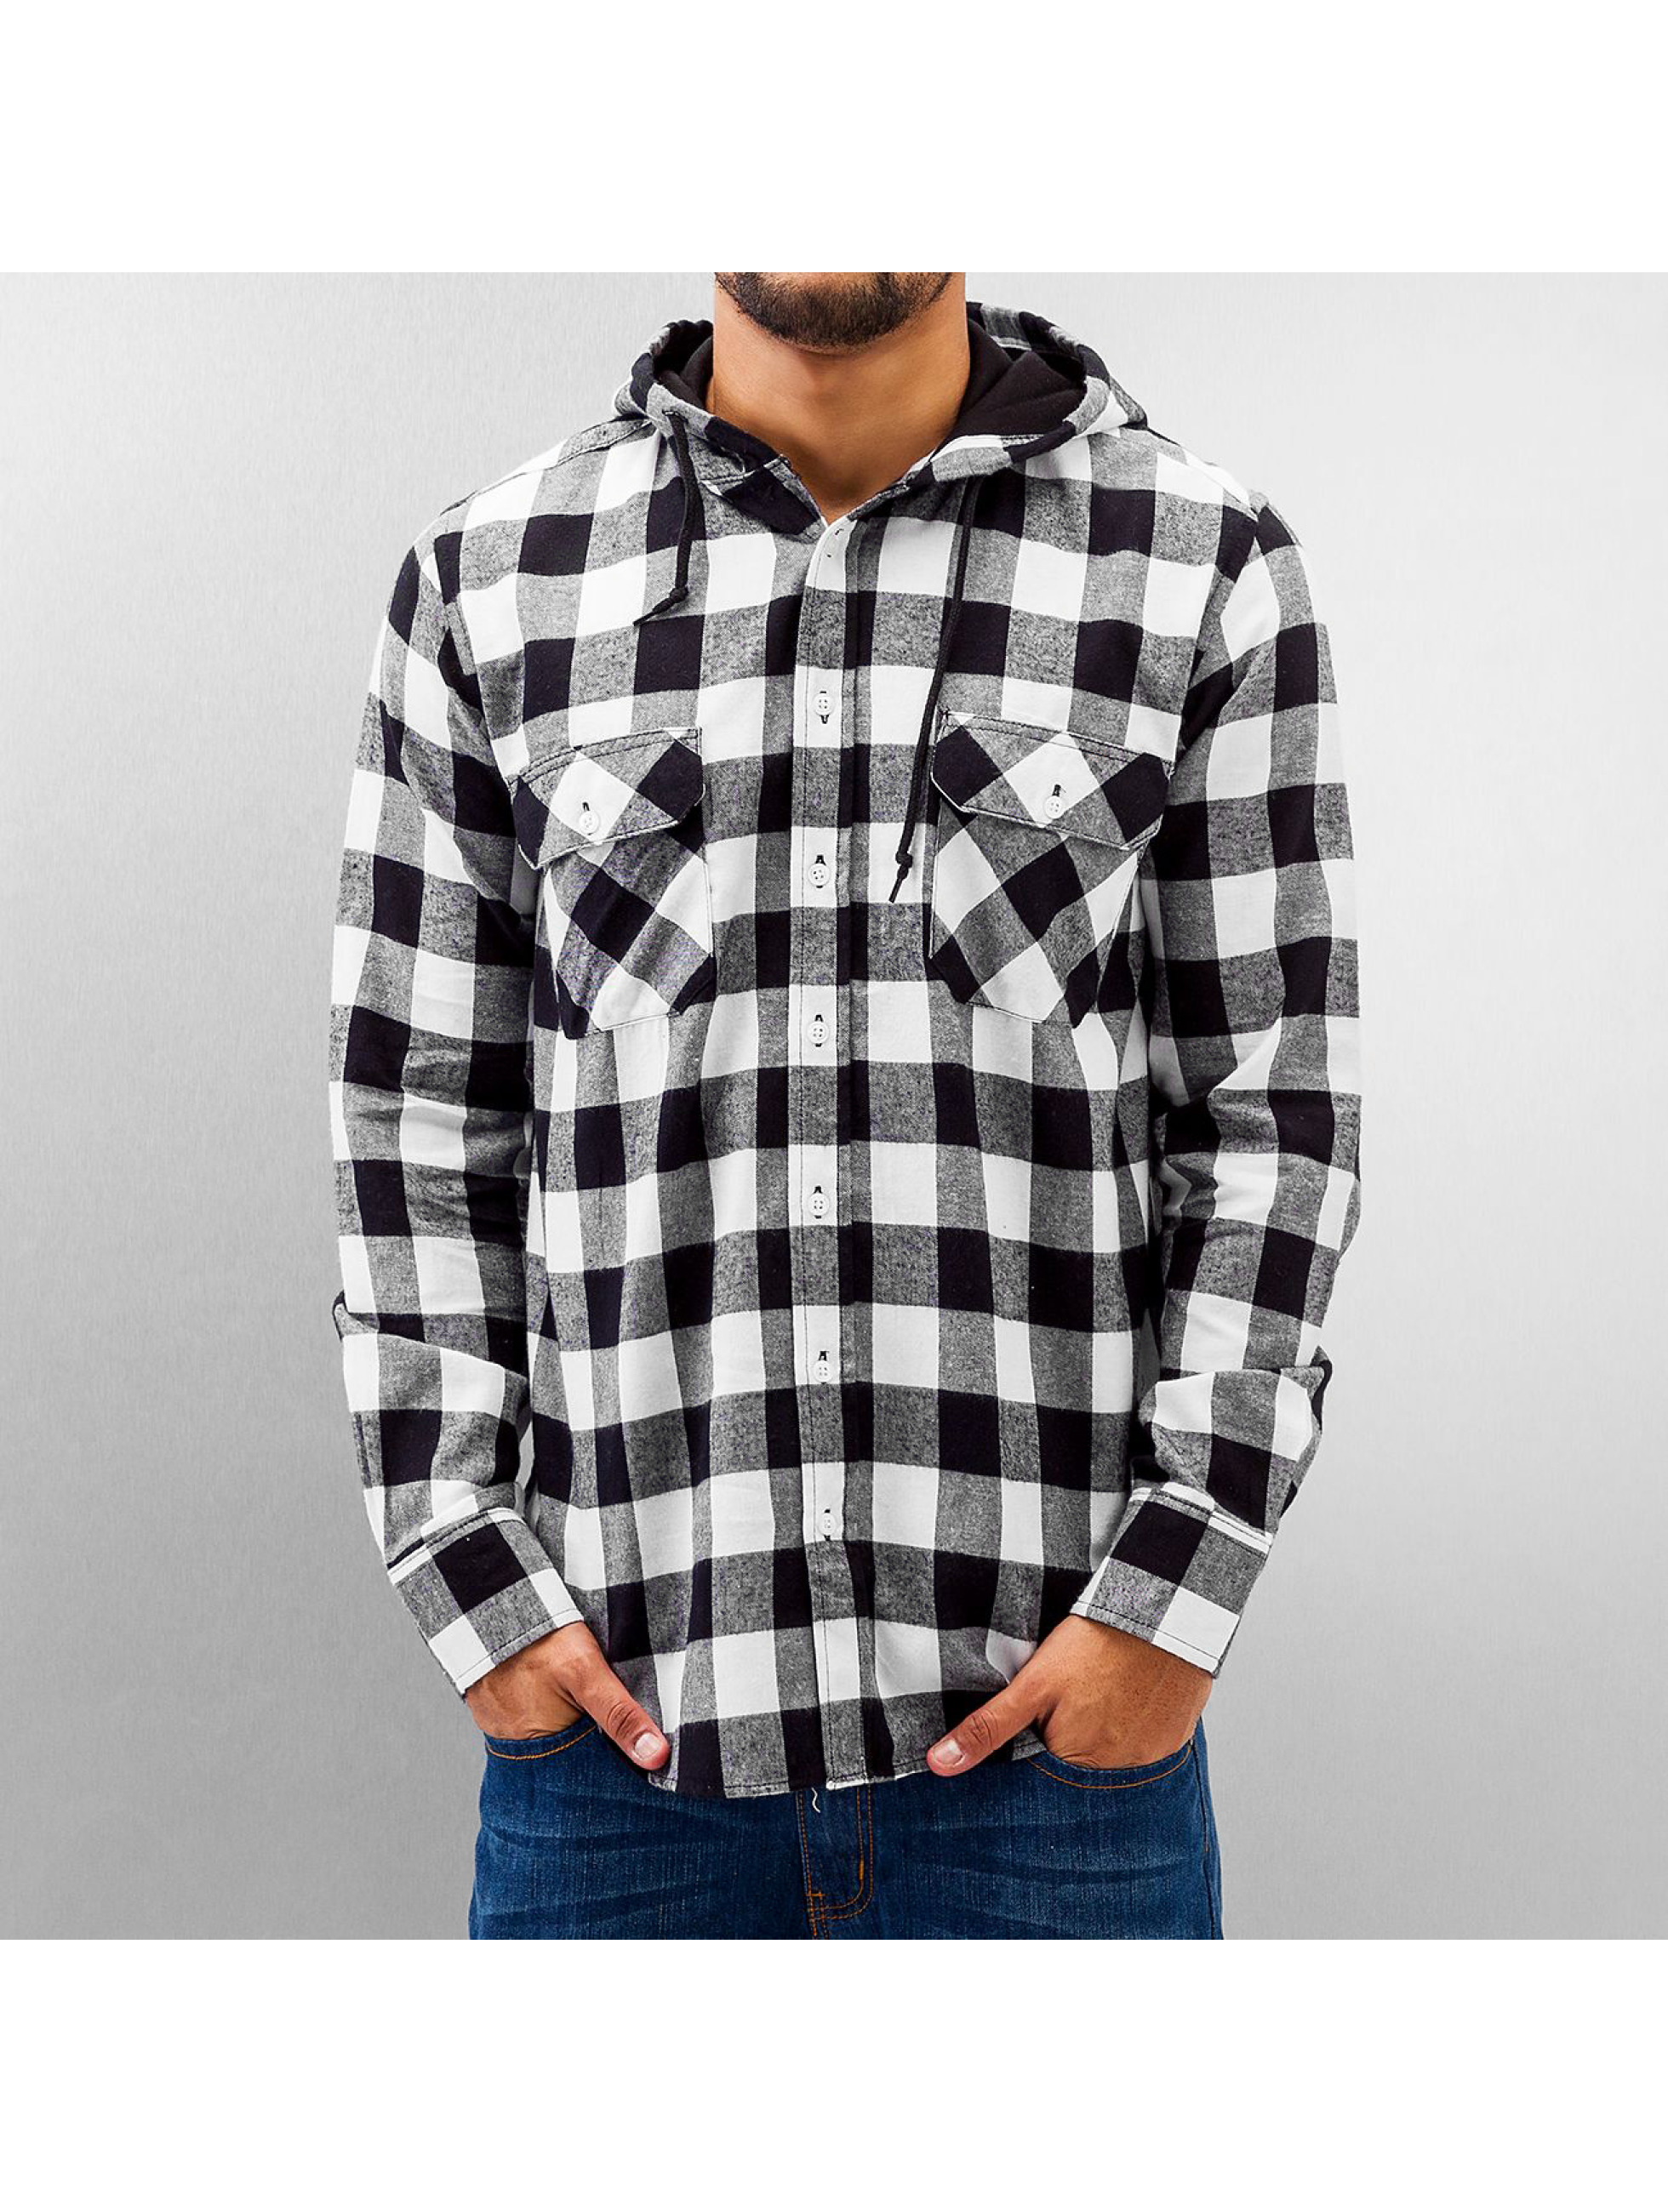 Urban Classics bovenstuk / overhemd Hooded Checked Flanell in zwart